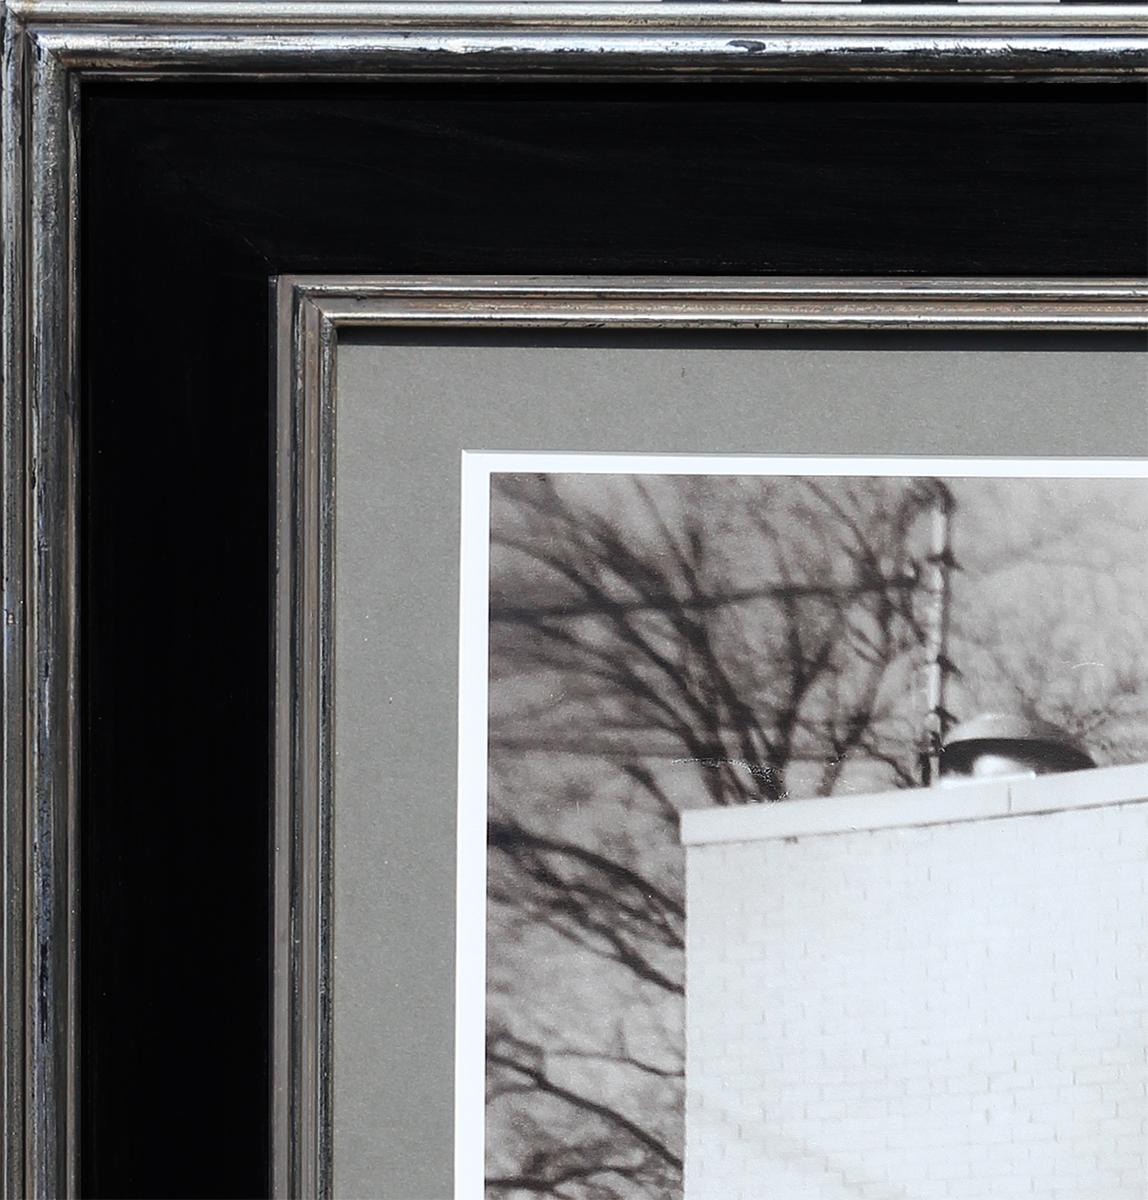 Photographie contemporaine en noir et blanc de l'artiste de Houston, TX, Jim Reitz. Cette photographie représente une scène de rue où un couple se tient près d'une peinture murale d'Obama. Cette fresque s'inspire de la célèbre affiche de Barack